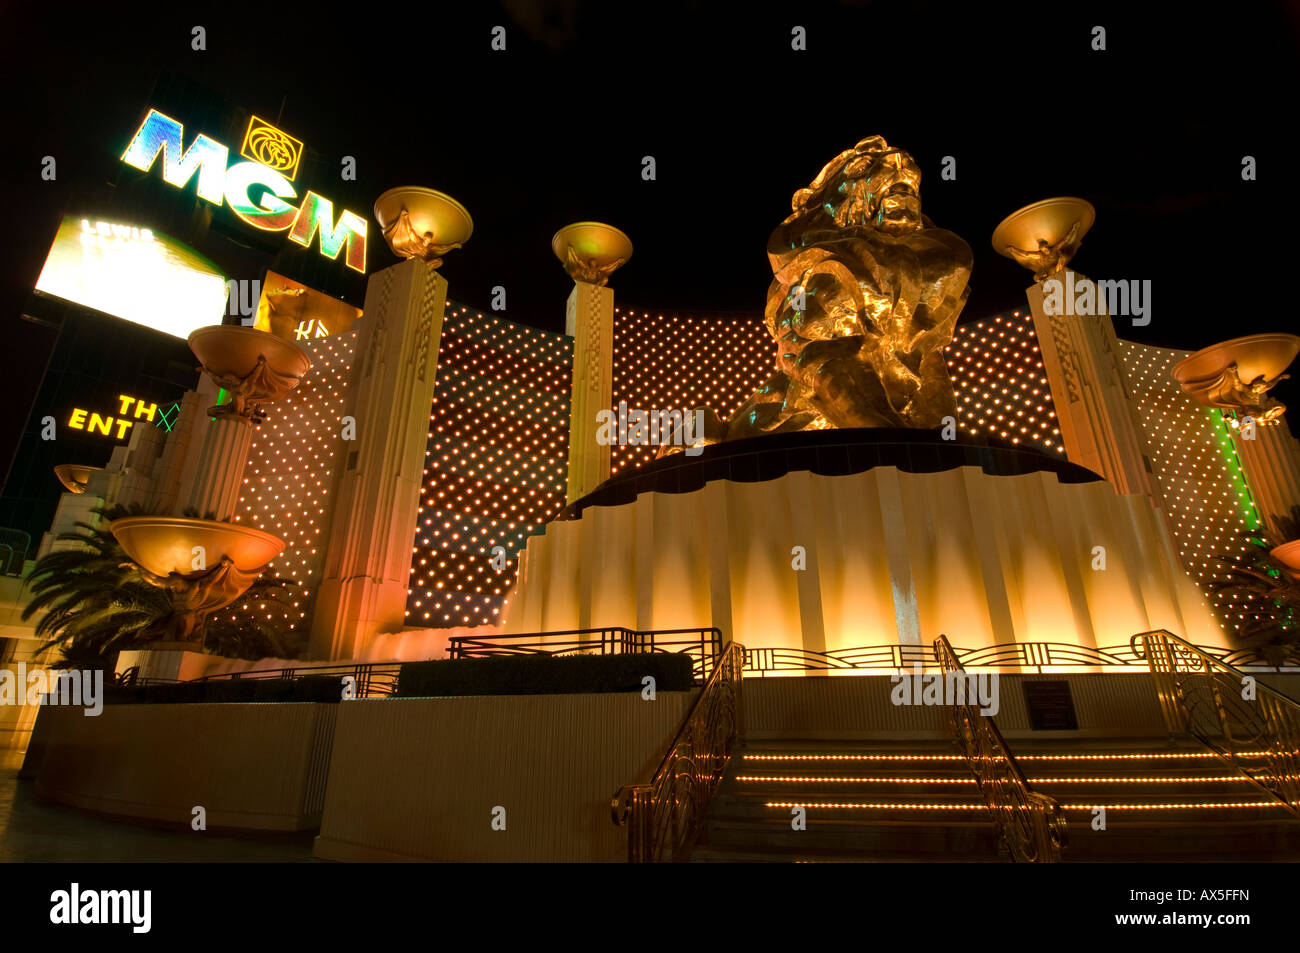 Estatua del león de oro en la parte delantera del MGM Grand Casino, Las Vegas Boulevard, Las Vegas, Nevada, EE.UU., América del Norte Foto de stock